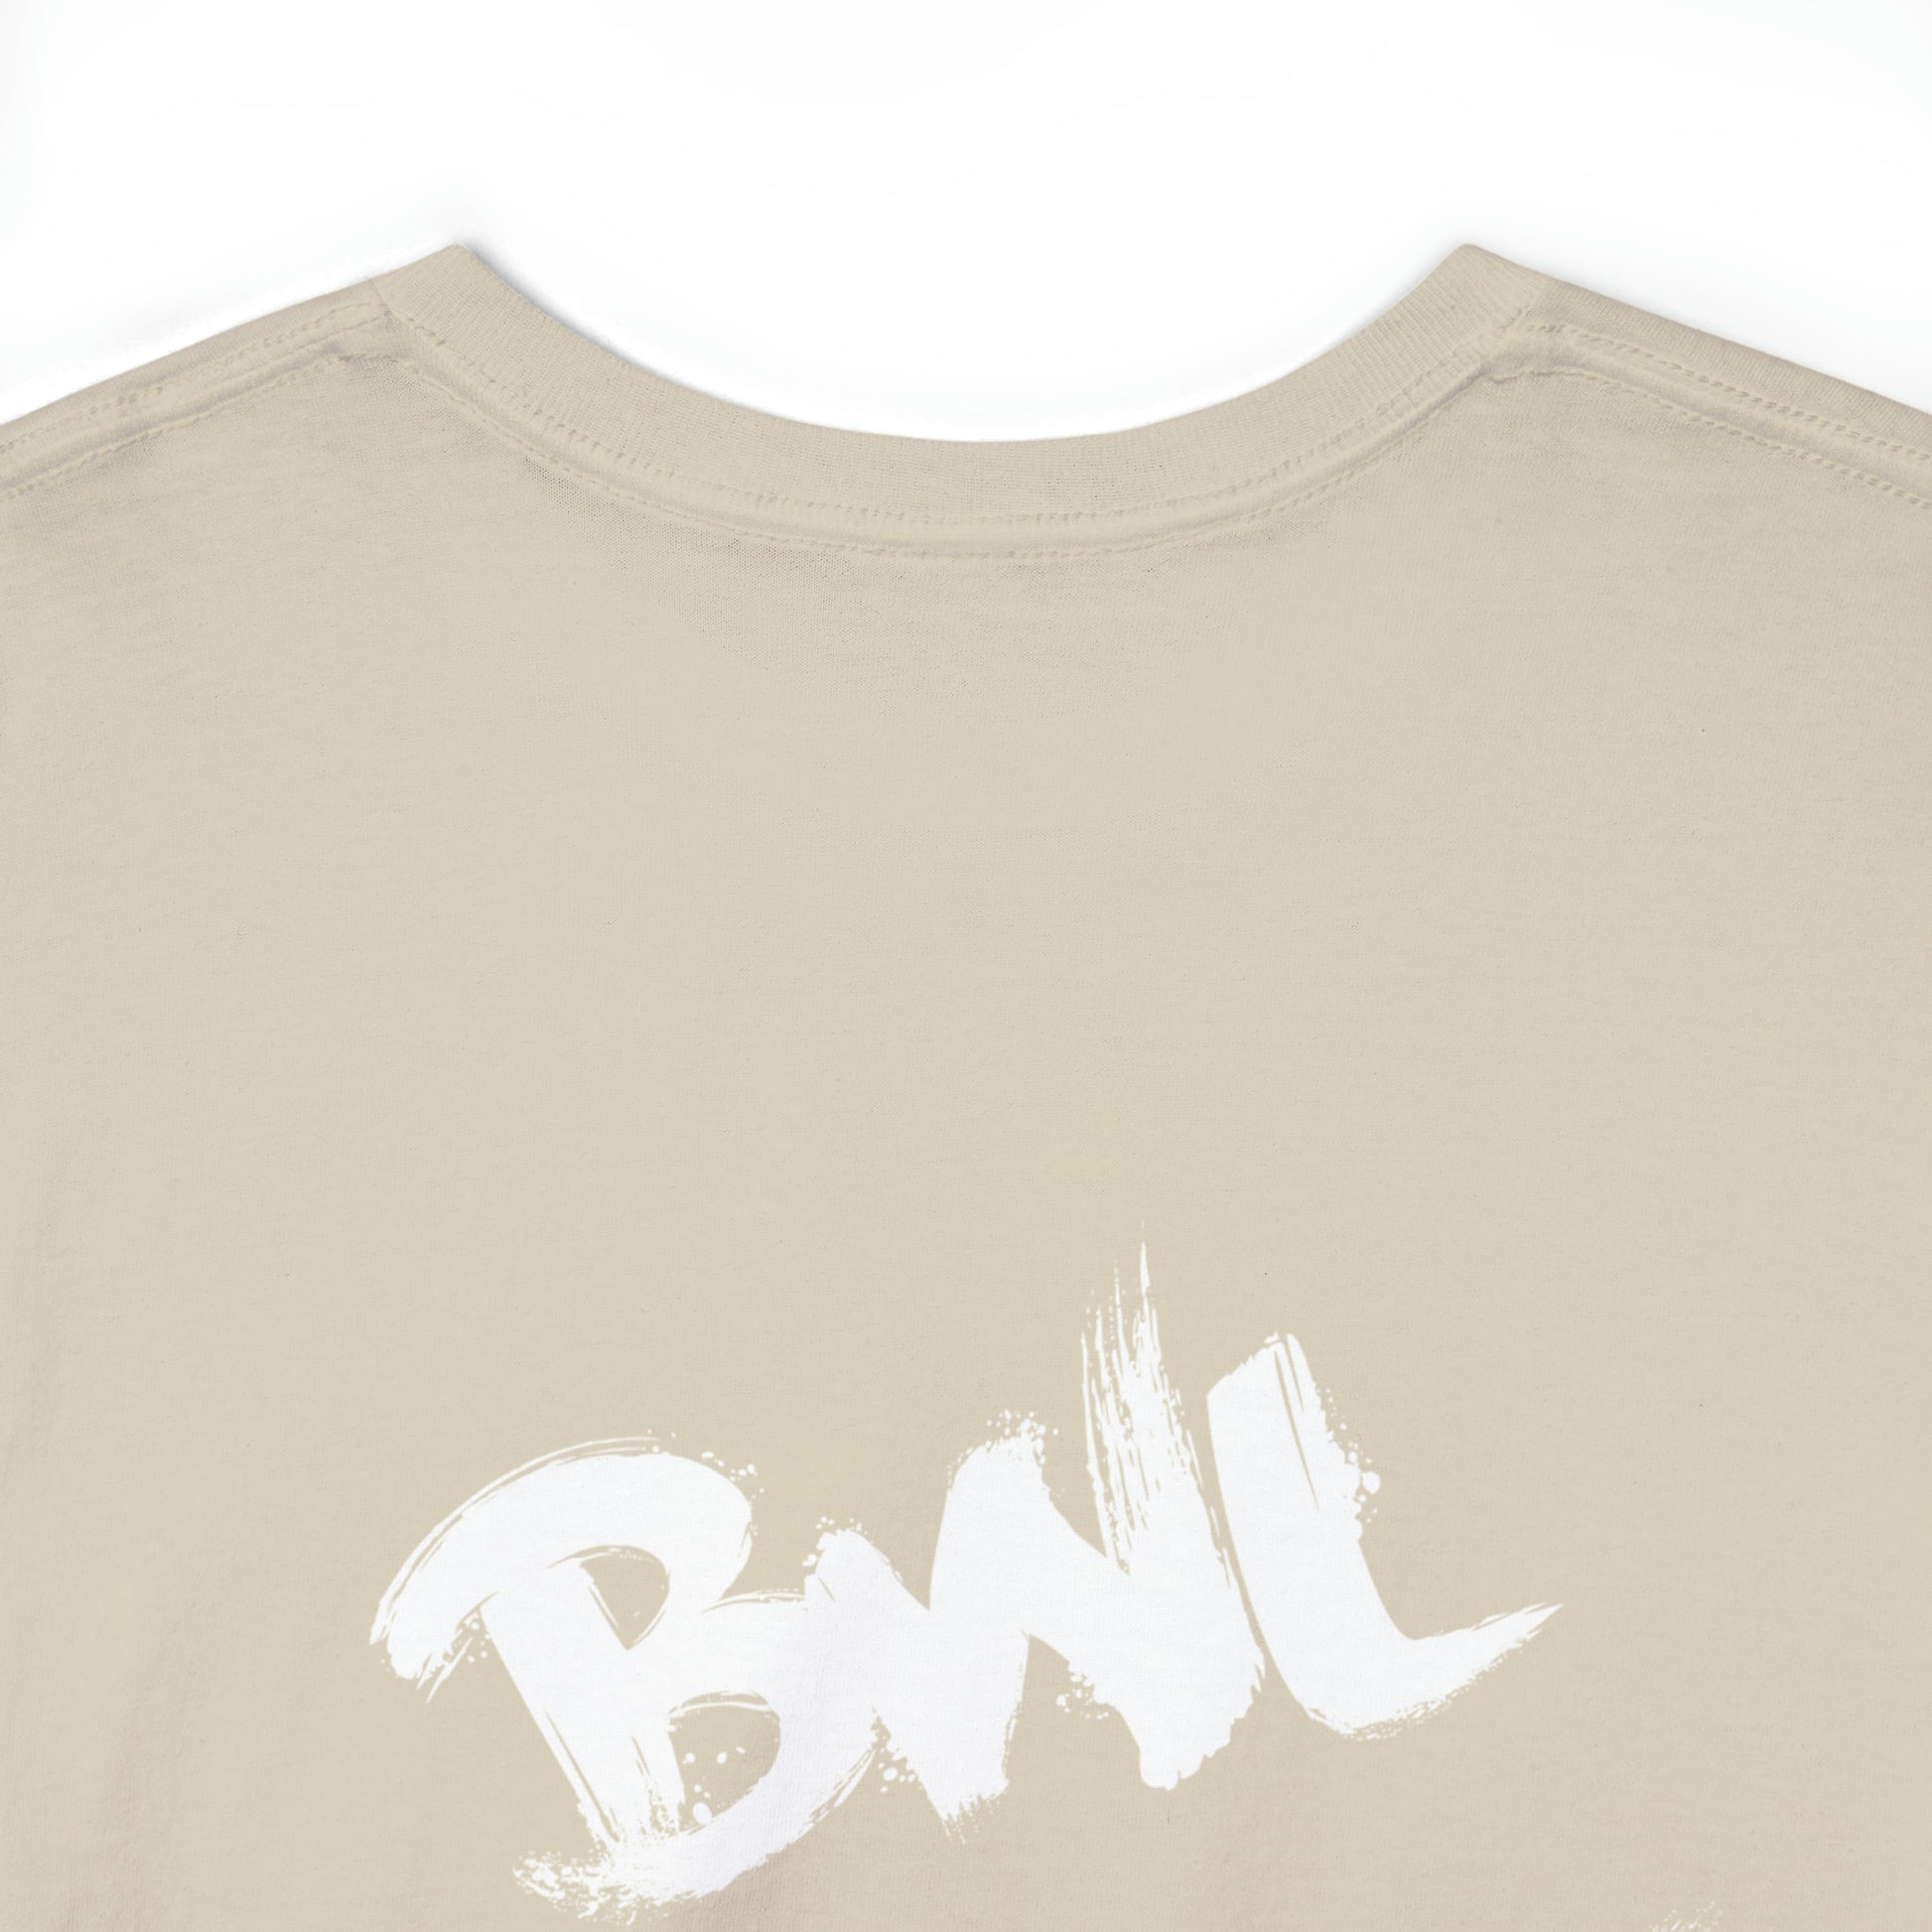 BWL, Rolex, Por$che, Ralph Lauren | Highperformer Shirt - BWL.Breitseite